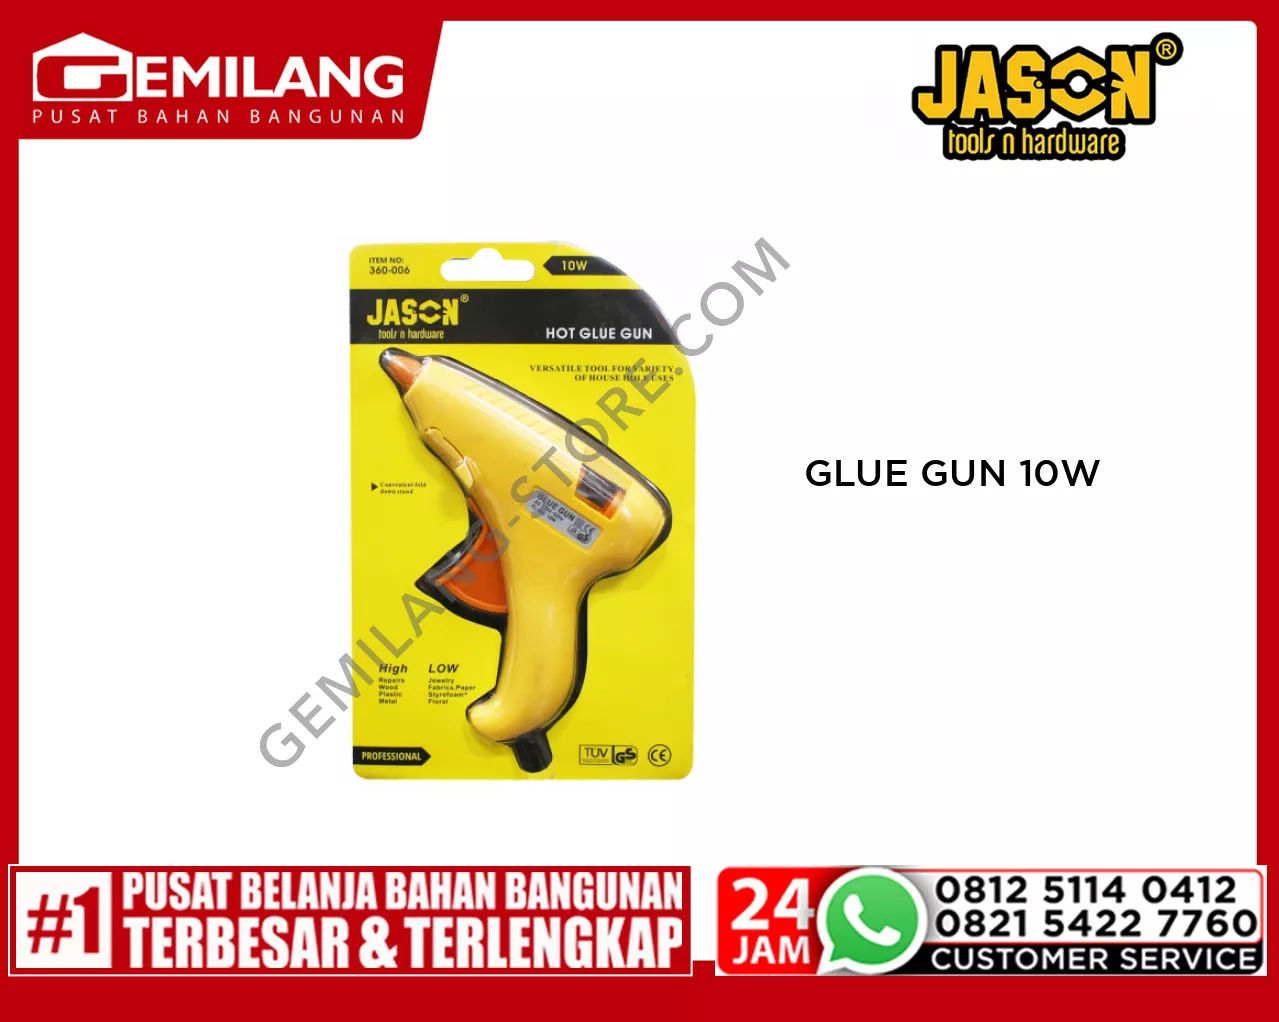 JASON GLUE GUN 10W (9.360.006)